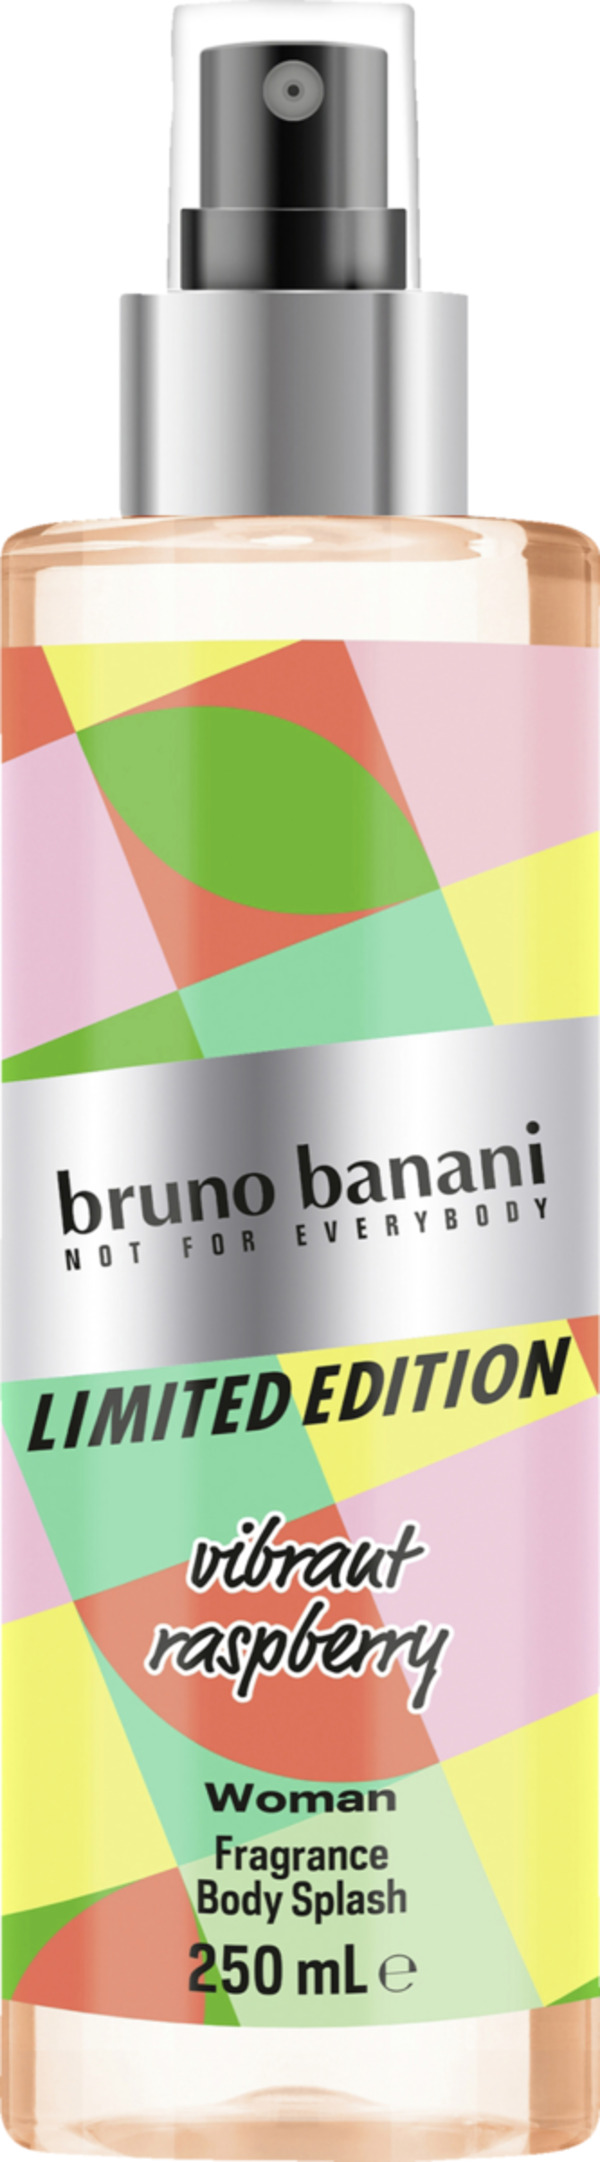 Bild 1 von bruno banani Limited Edition Woman, Bodymist 250 ml